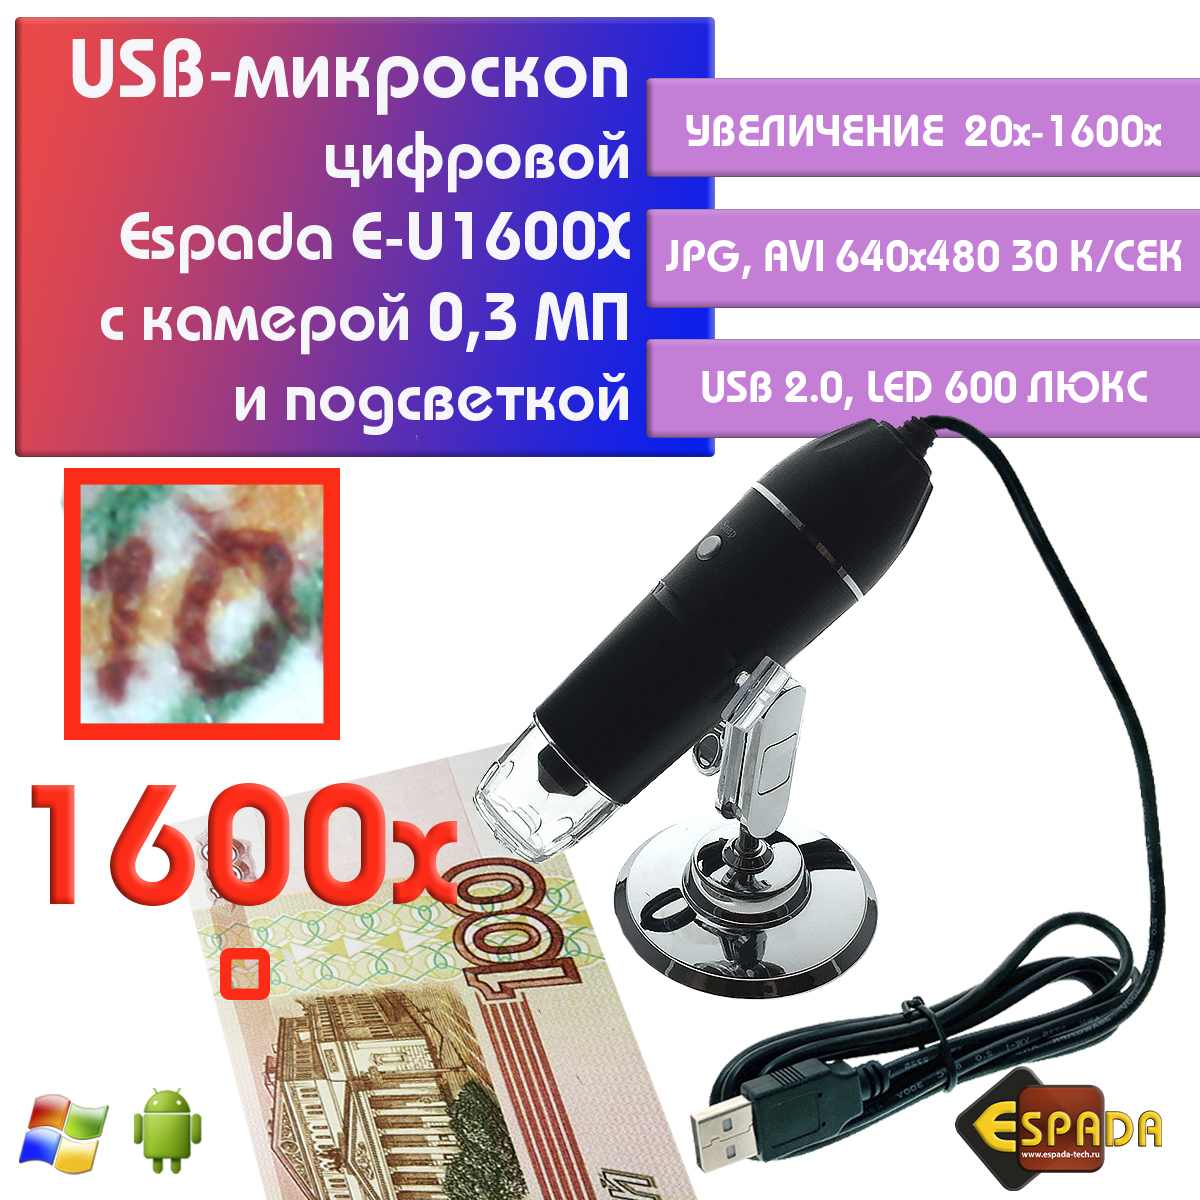 Портативный цифровой USB-микроскоп Espada E-U1600X c камерой 0,3 МП и увеличением 1600x видеокарта afox geforce gt 730